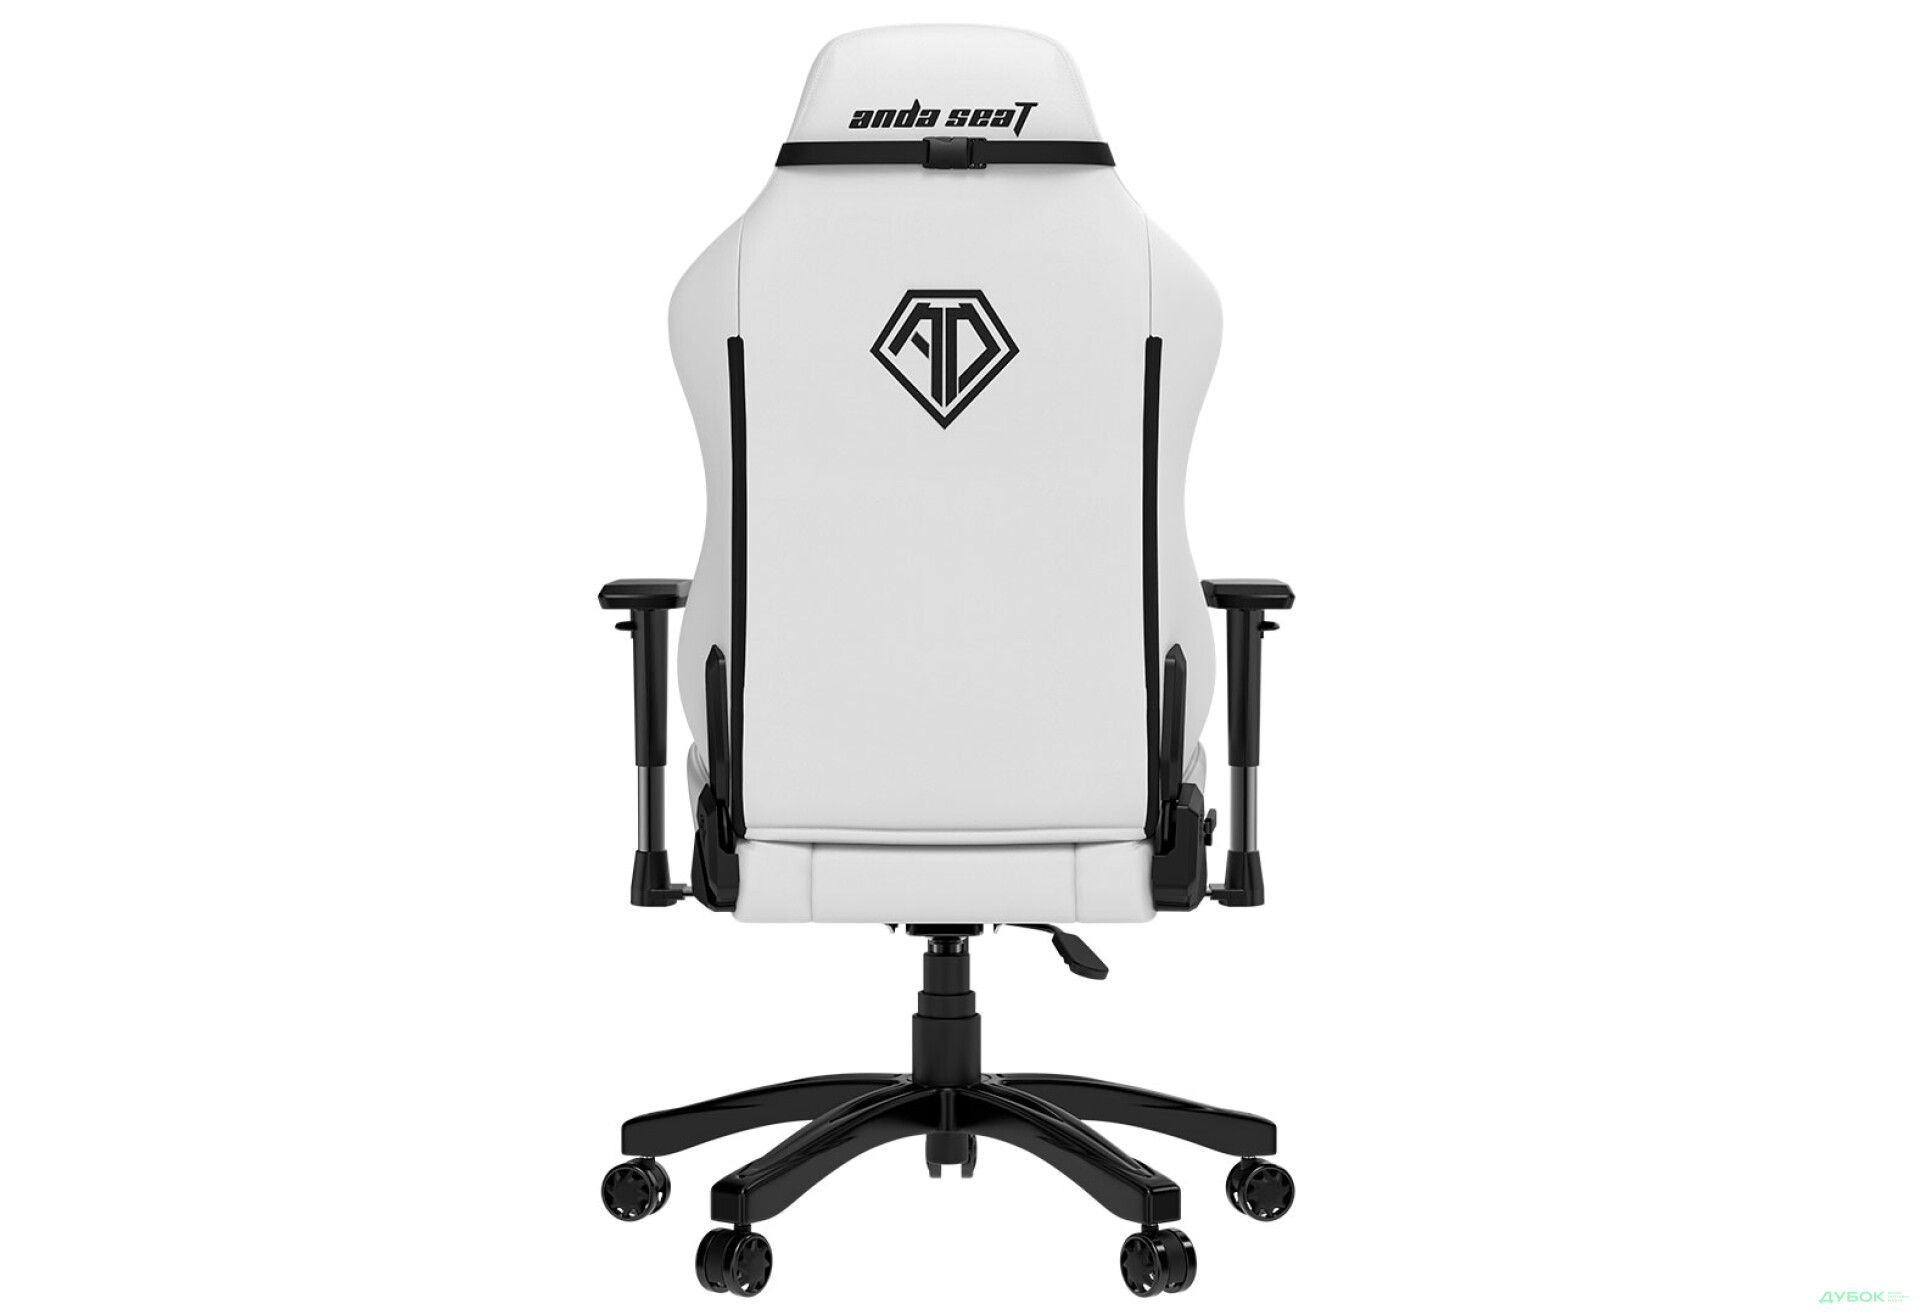 Фото 3 - Компьютерное кресло Anda Seat Phantom 3 70x55x134 см игровое, белое